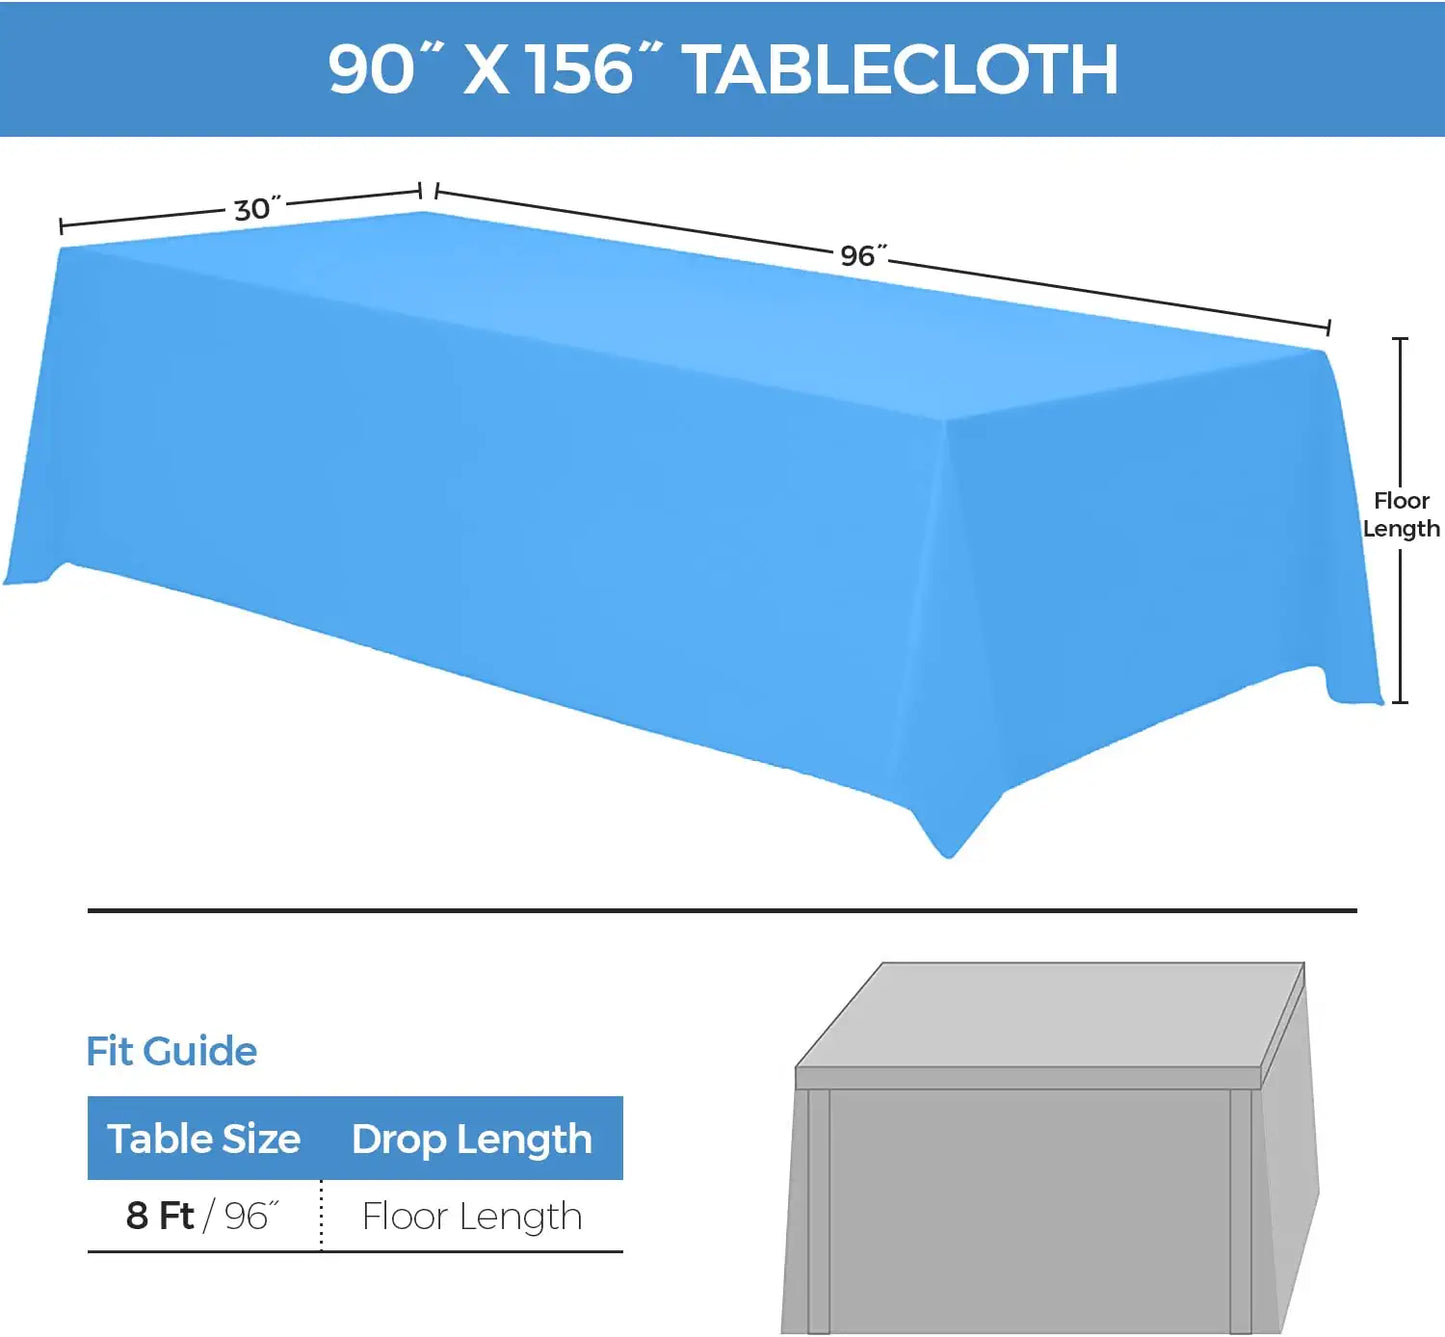 8 Ft drop tablecloth